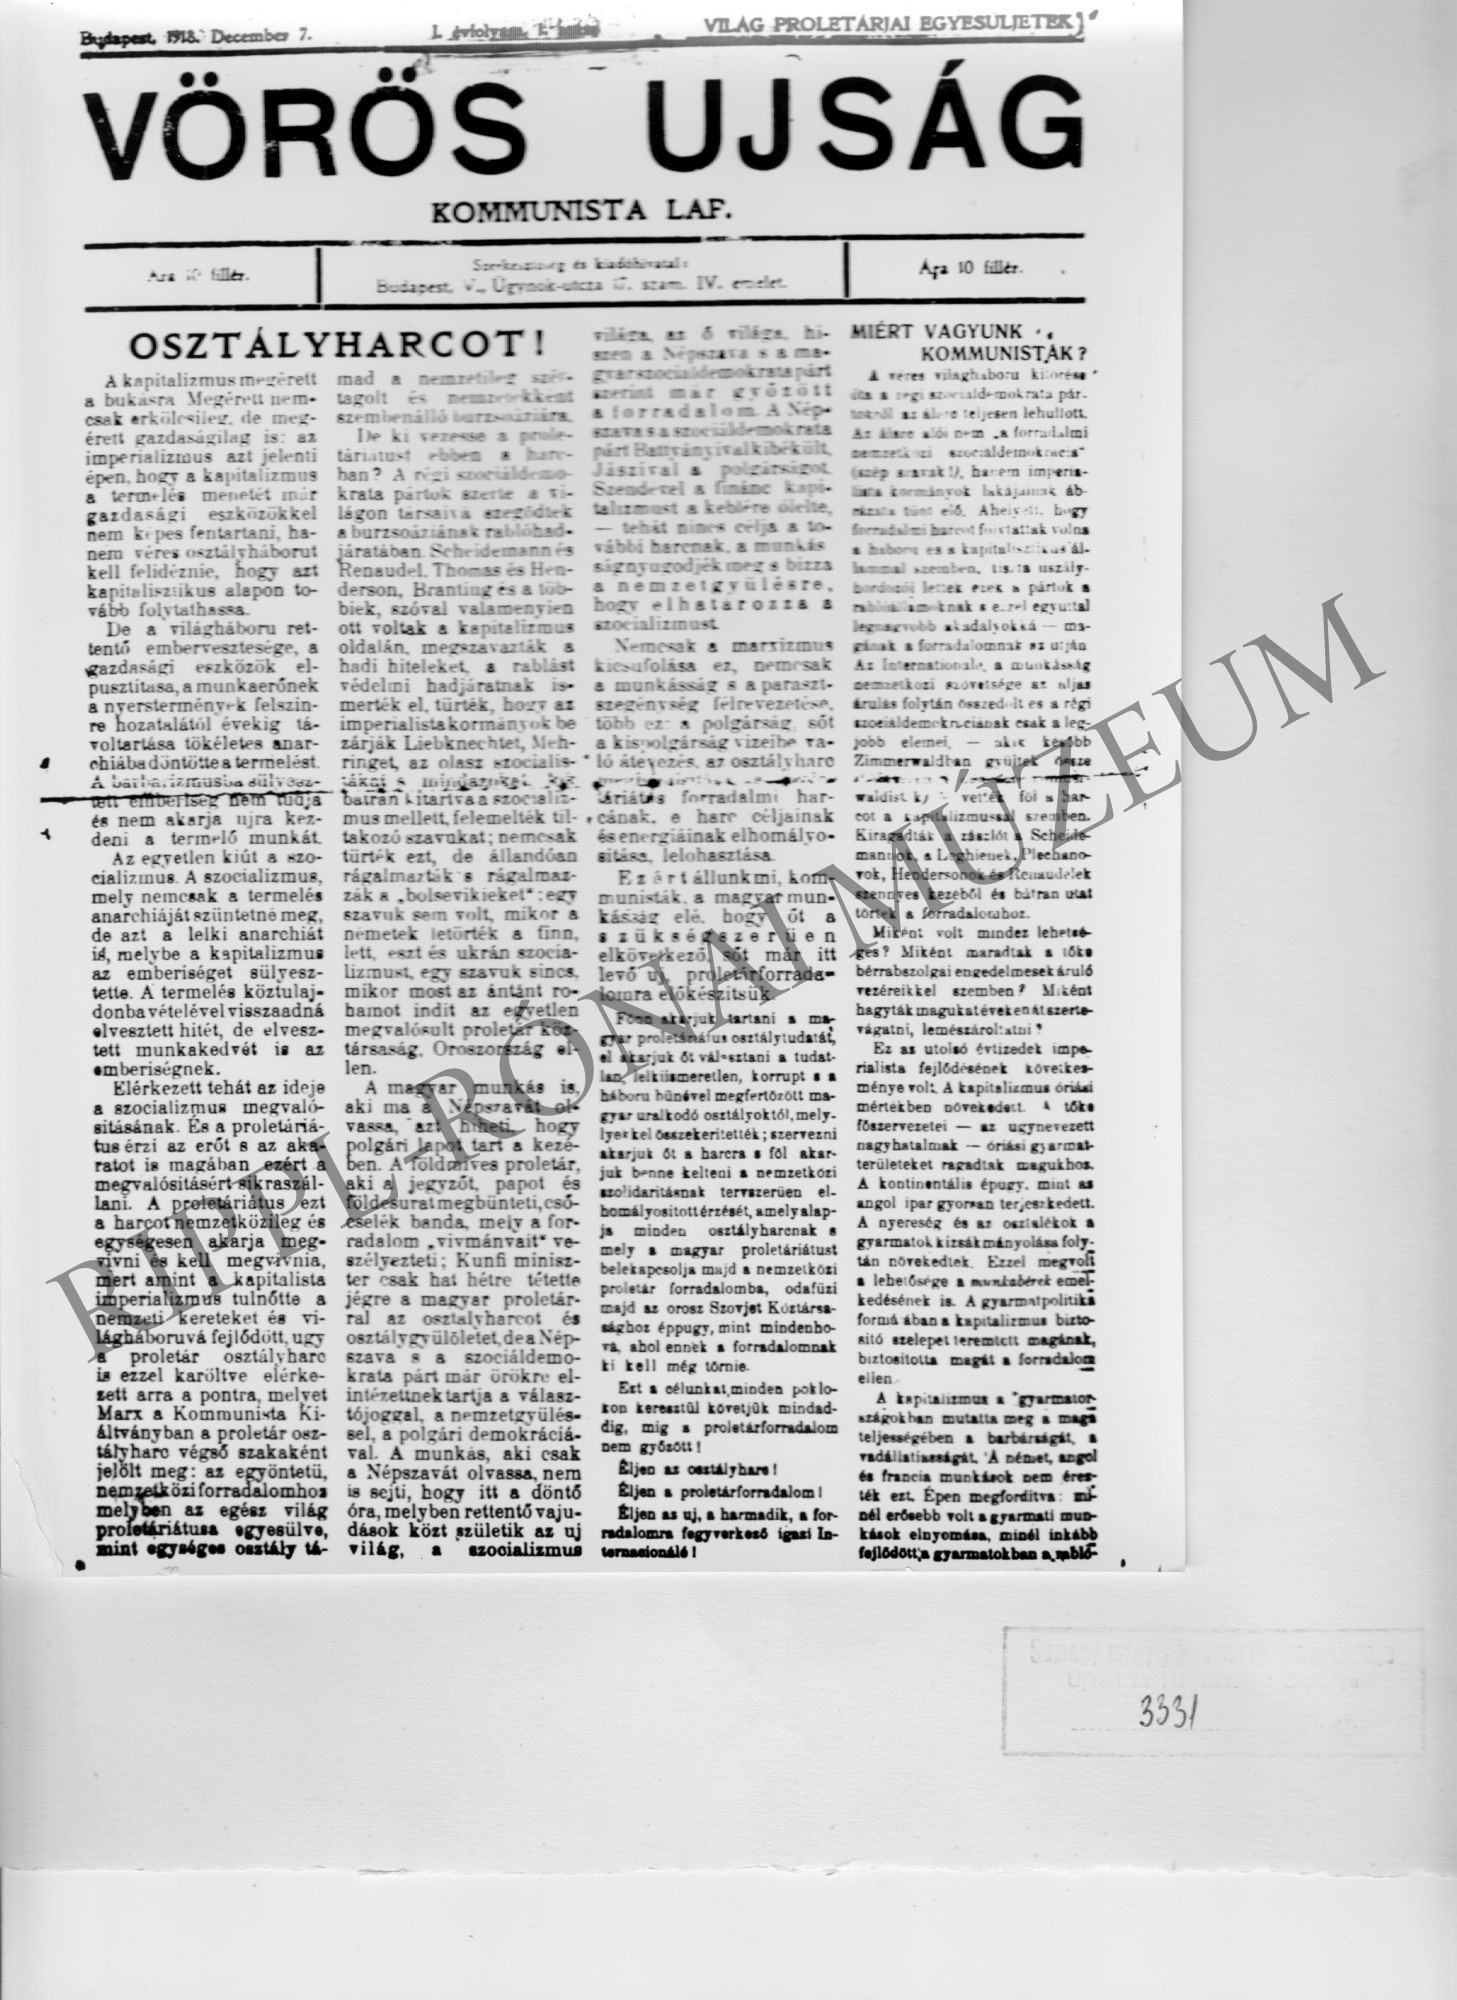 A Vörös Ujság c. kommunista lap első száma - címoldal 1918.december 7. (Rippl-Rónai Múzeum CC BY-NC-SA)